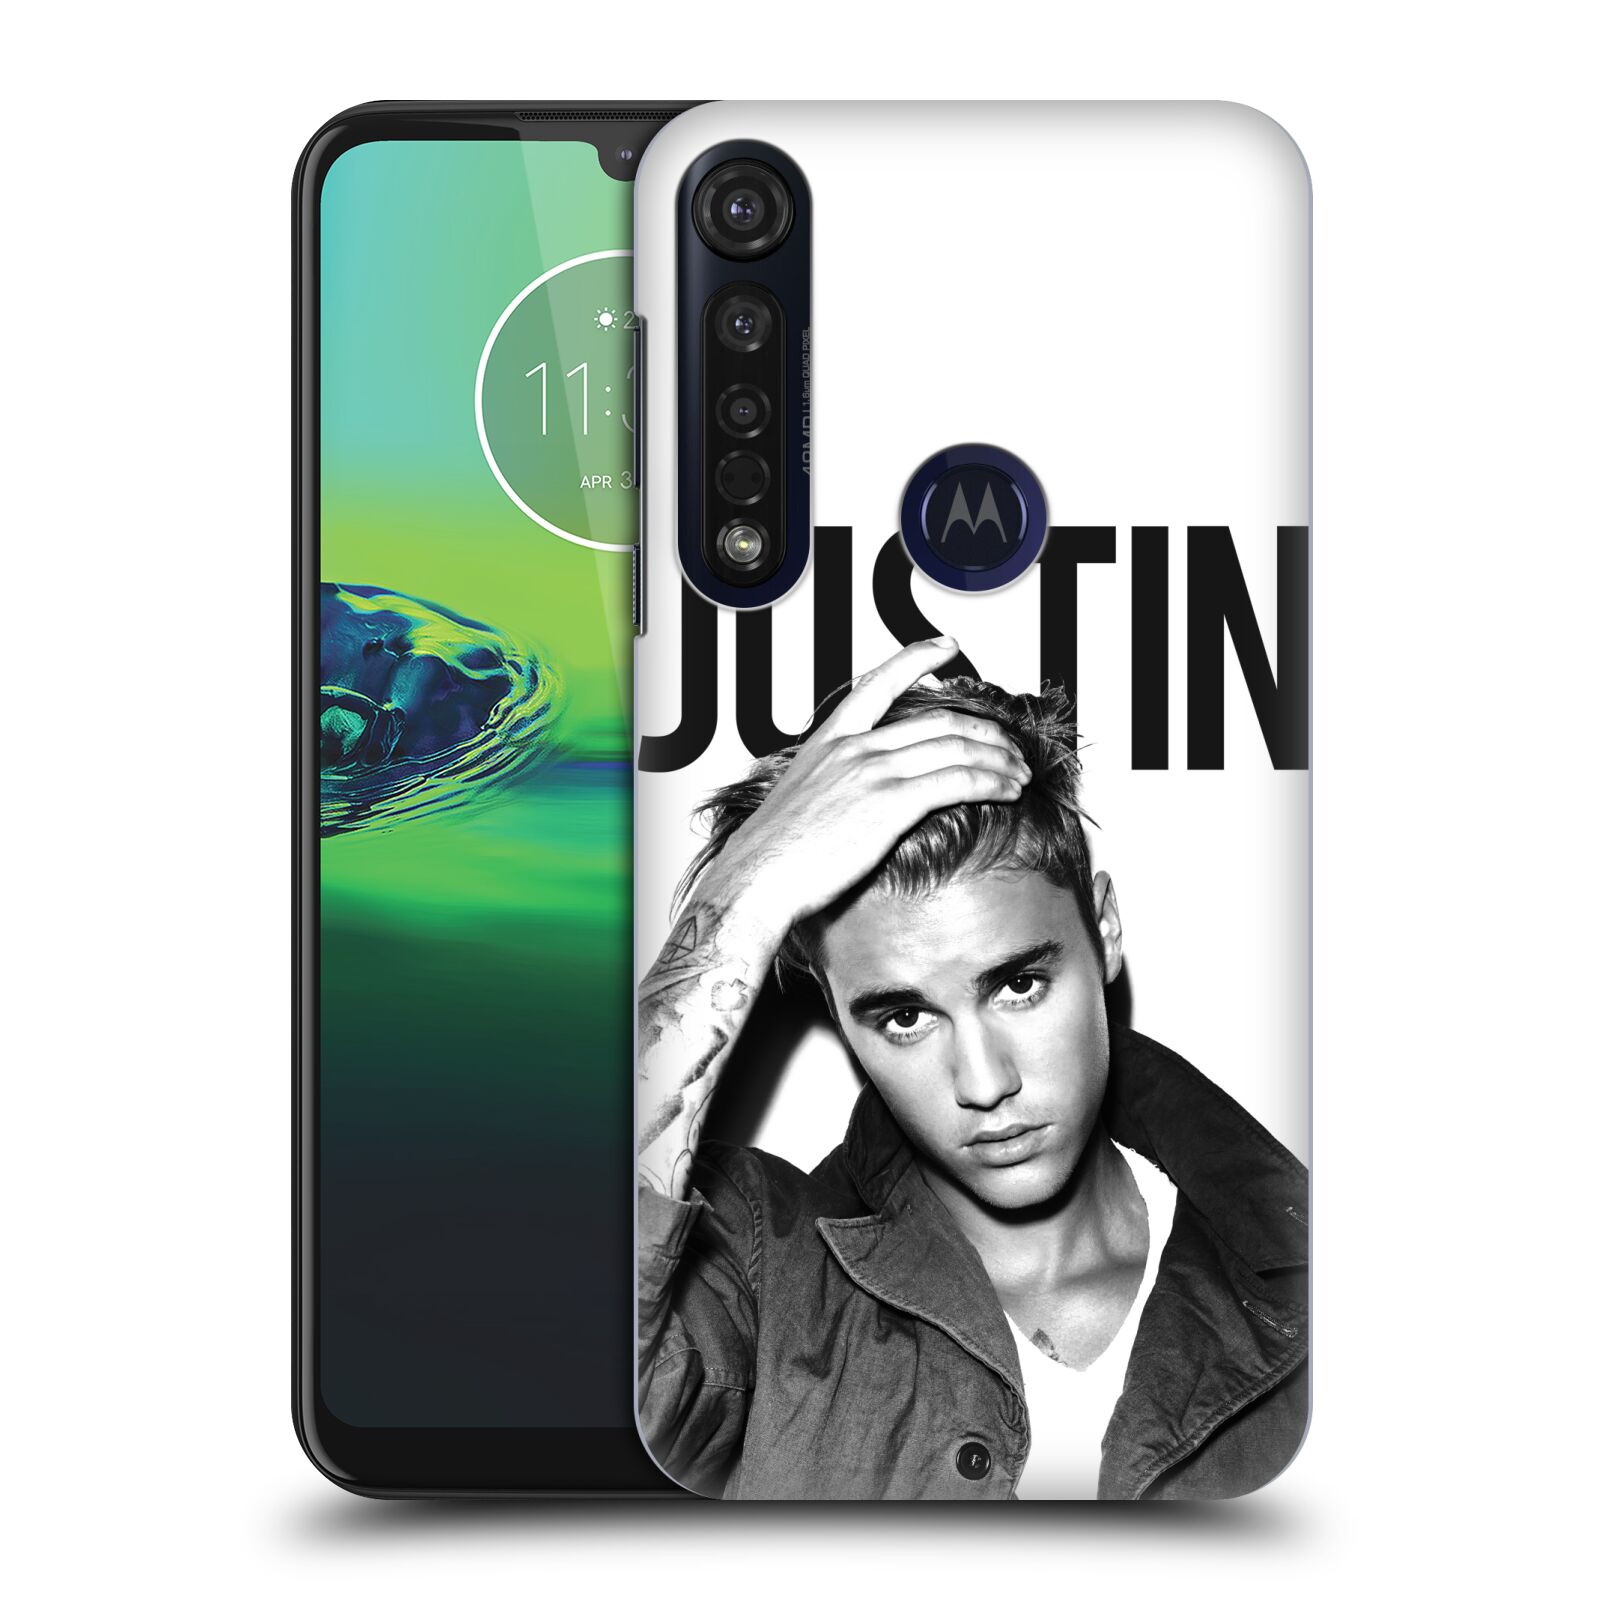 Pouzdro na mobil Motorola Moto G8 PLUS - HEAD CASE - Justin Bieber foto Purpose černá a bílá